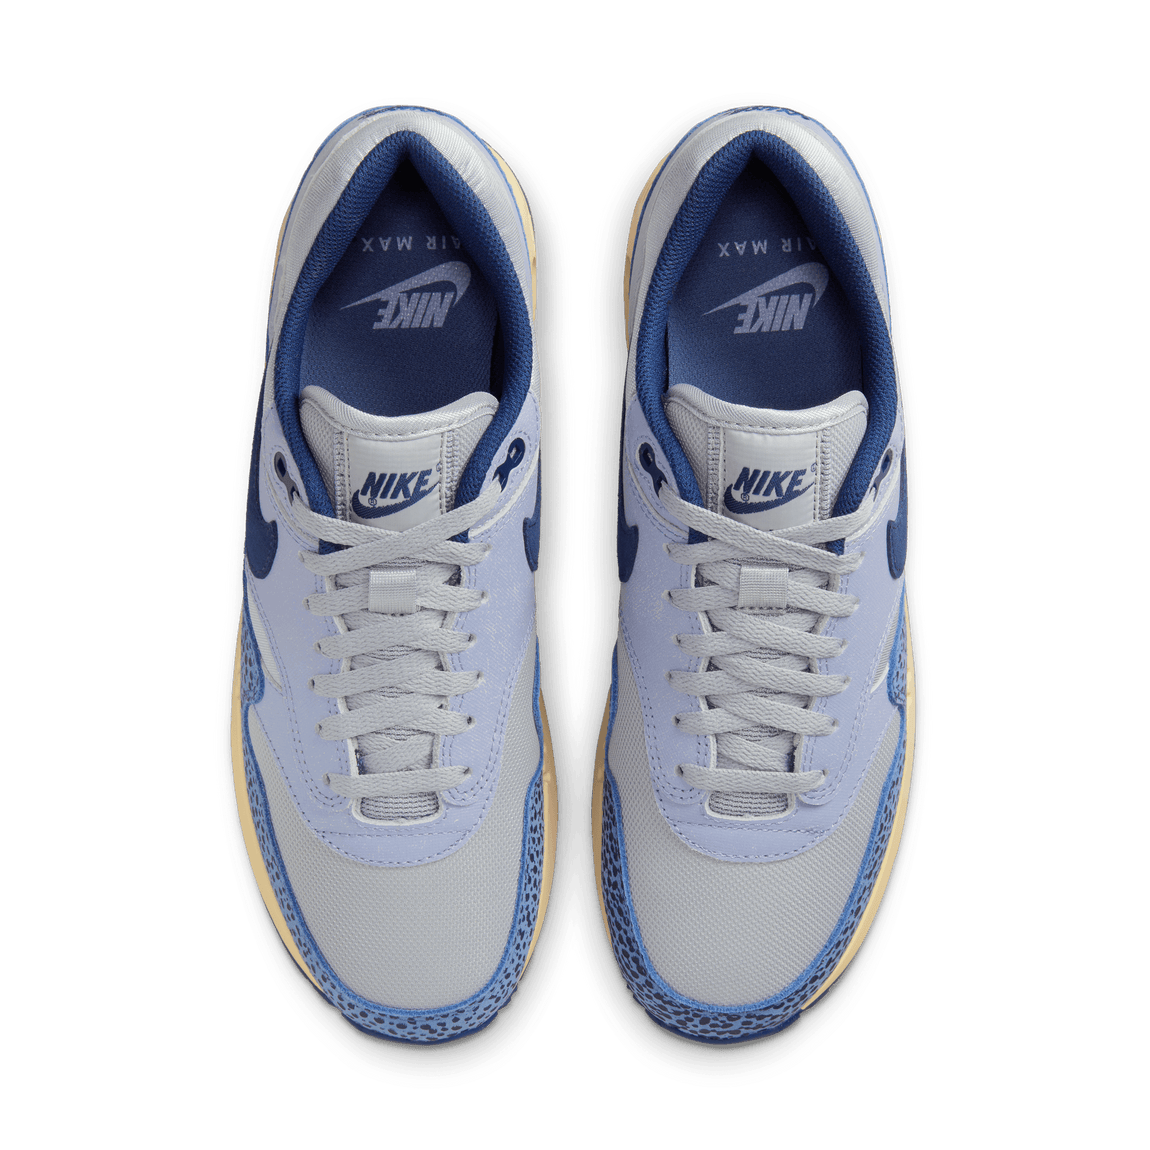 Nike Air Max 1 '86 Premium (Light Smoke Grey/Diffused Blue-Indigo Haze) 6/16 - Nike Air Max 1 '86 Premium (Light Smoke Grey/Diffused Blue-Indigo Haze) 6/16 - 